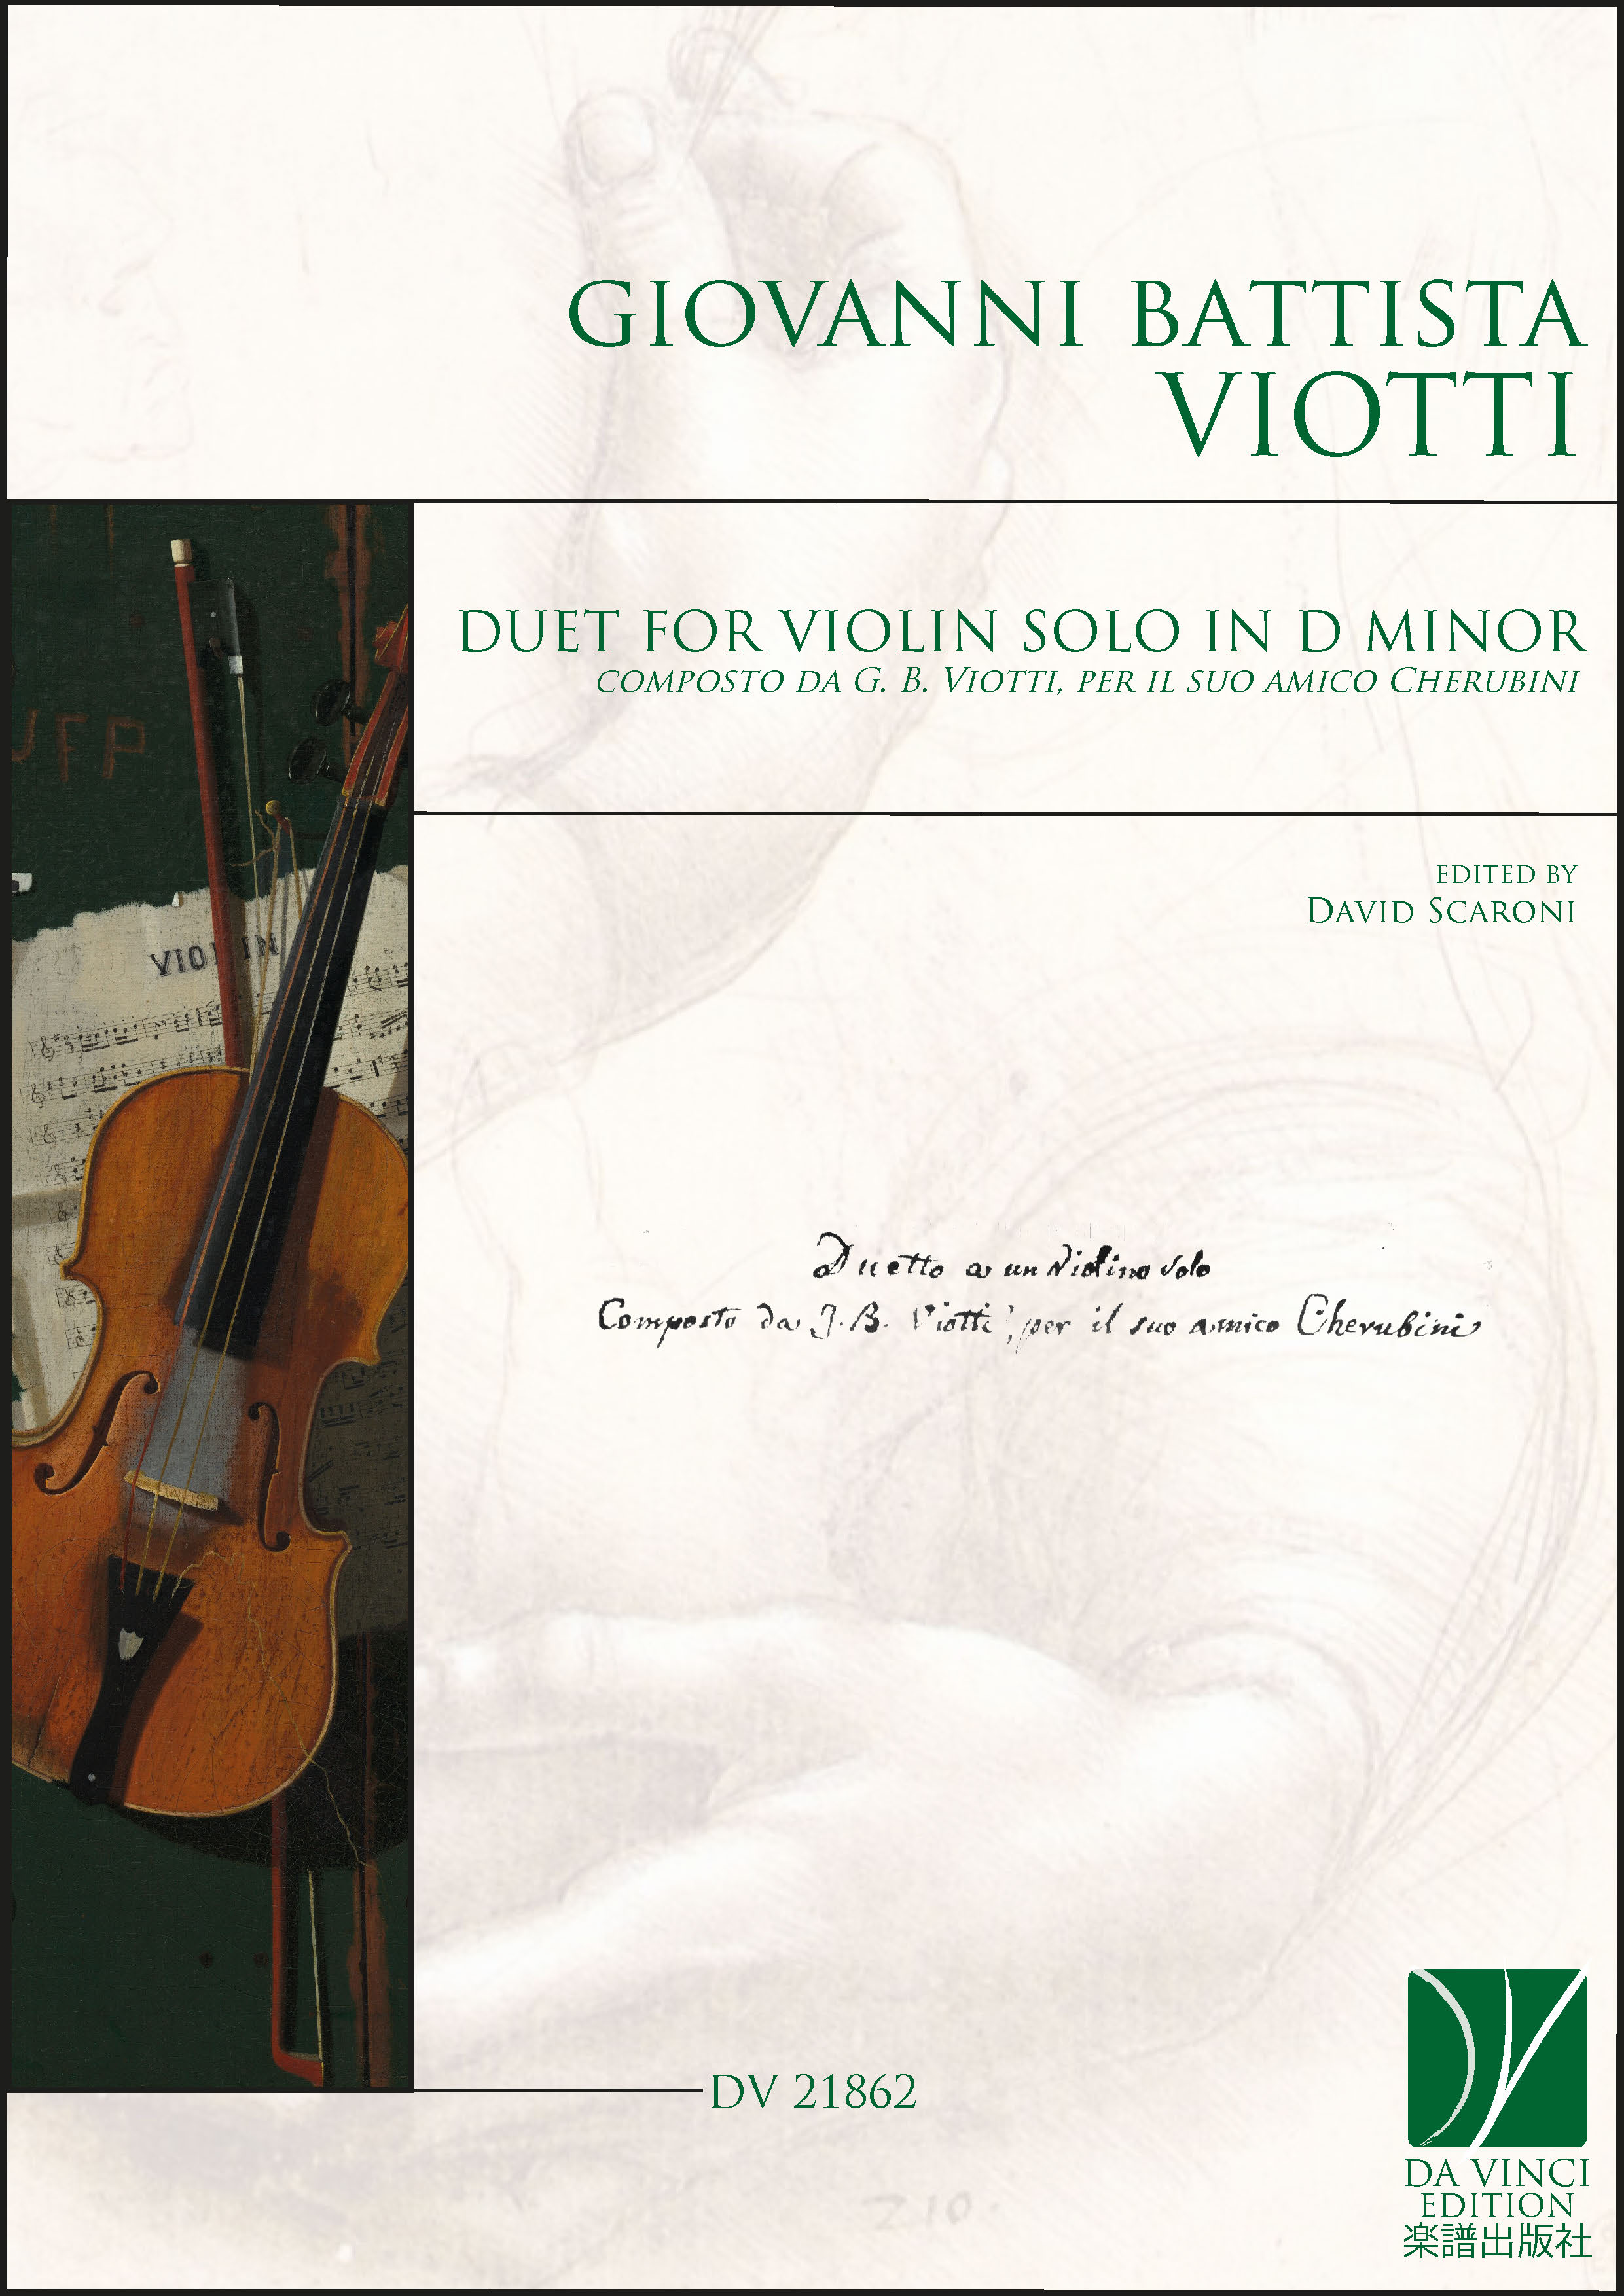 Duetto for Violin solo in D minor (VIOTTI GIOVANNI BATTISTA)